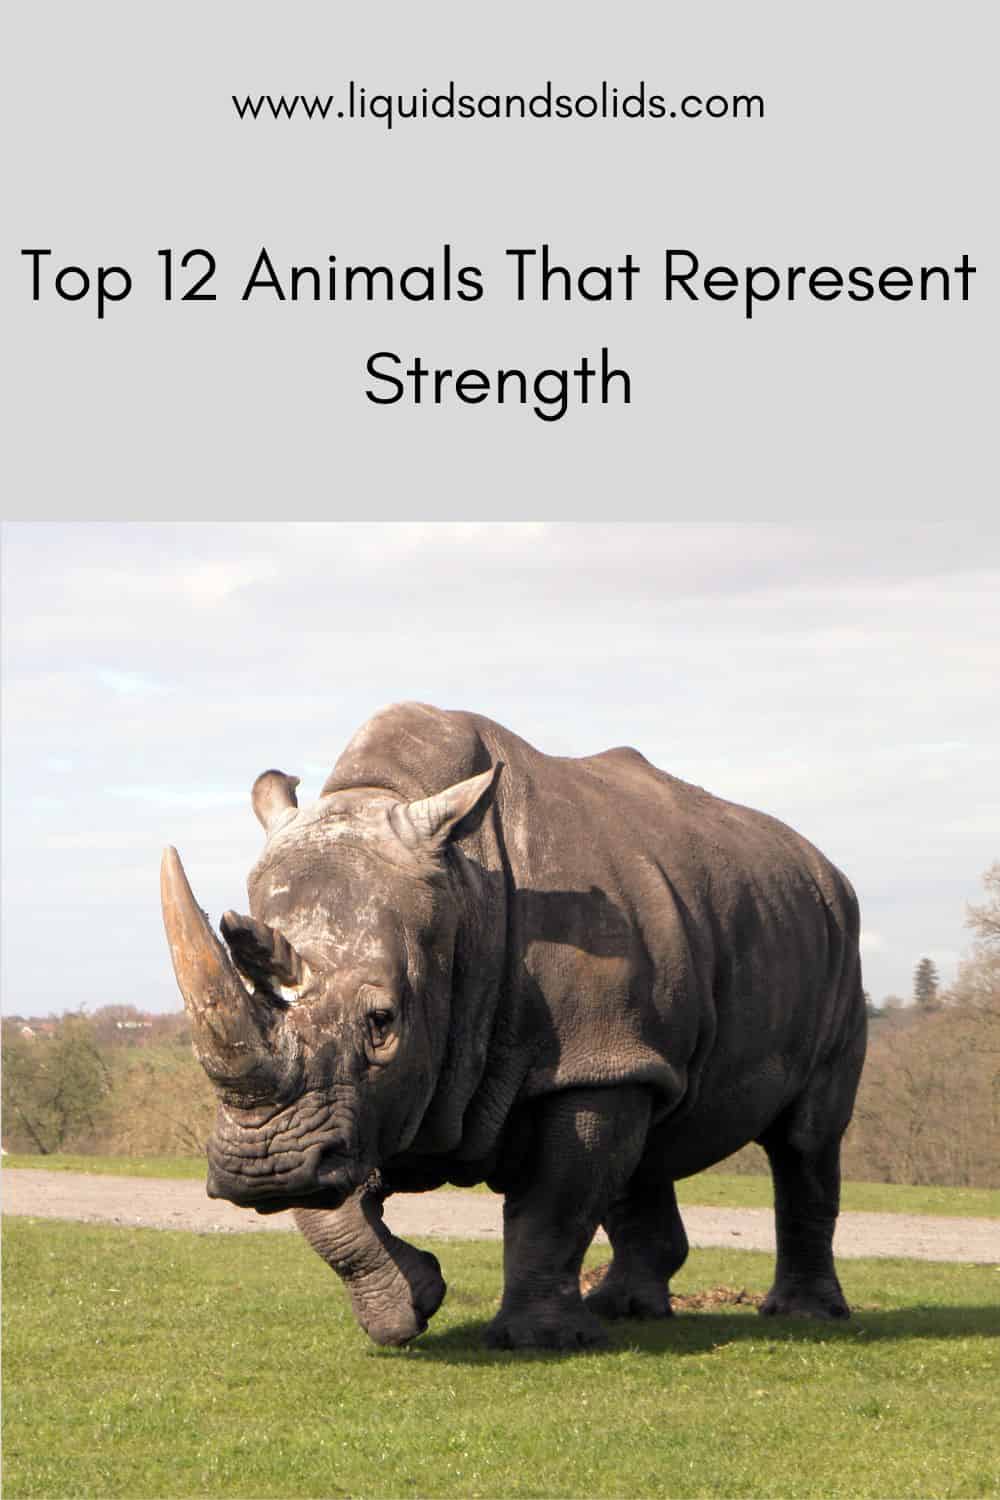  ტოპ 12 ცხოველი, რომლებიც წარმოადგენენ ძალას